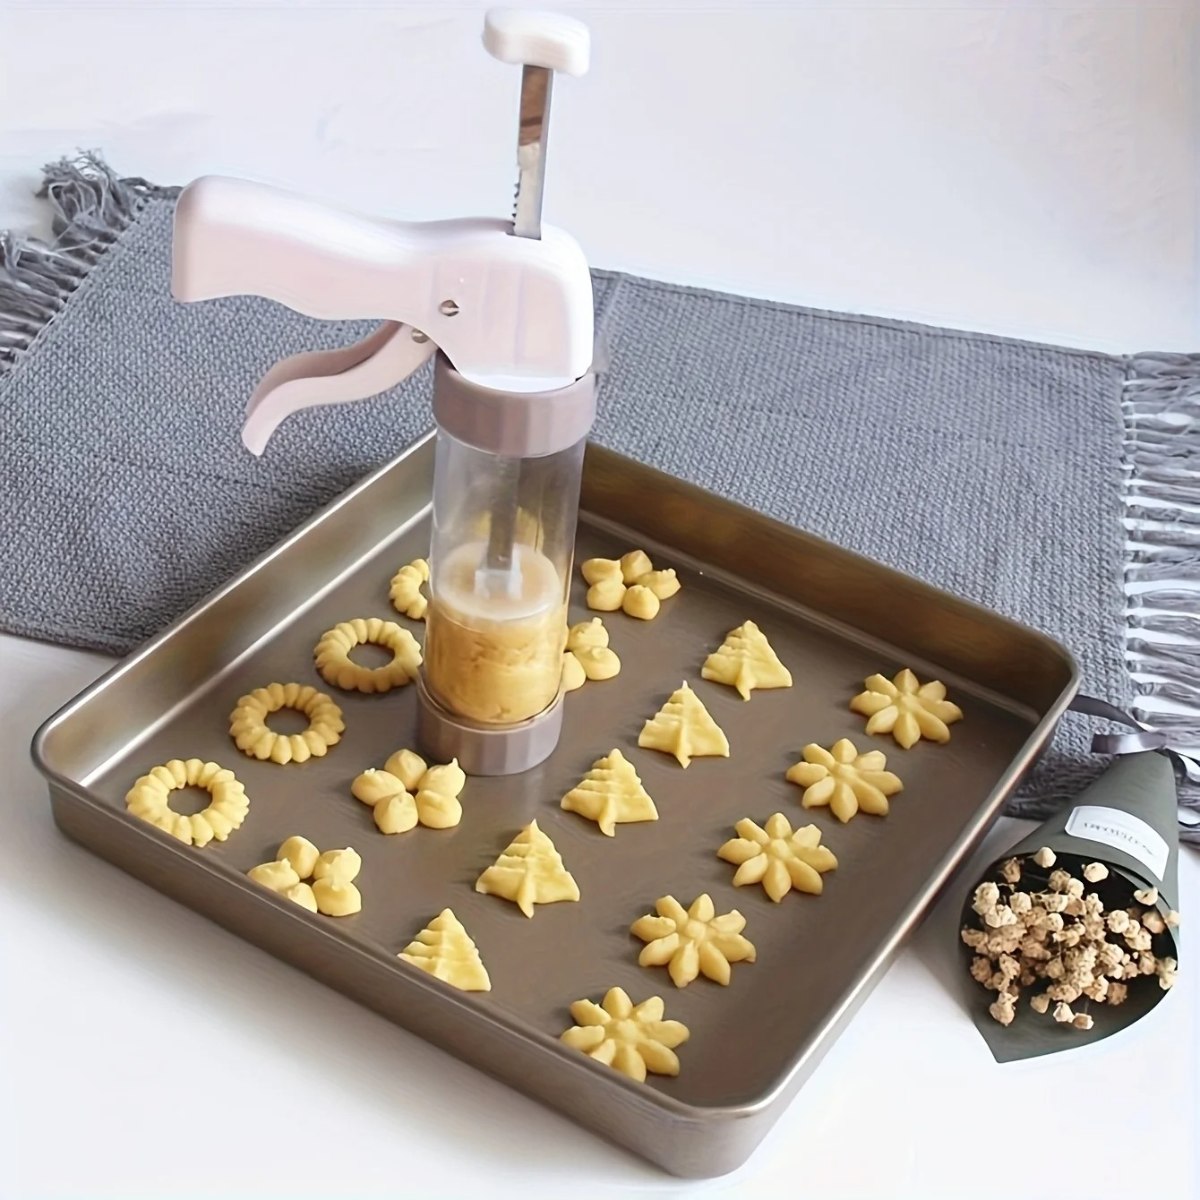 CookieMaster - להכנת עוגיות בעיצוב מיוחד